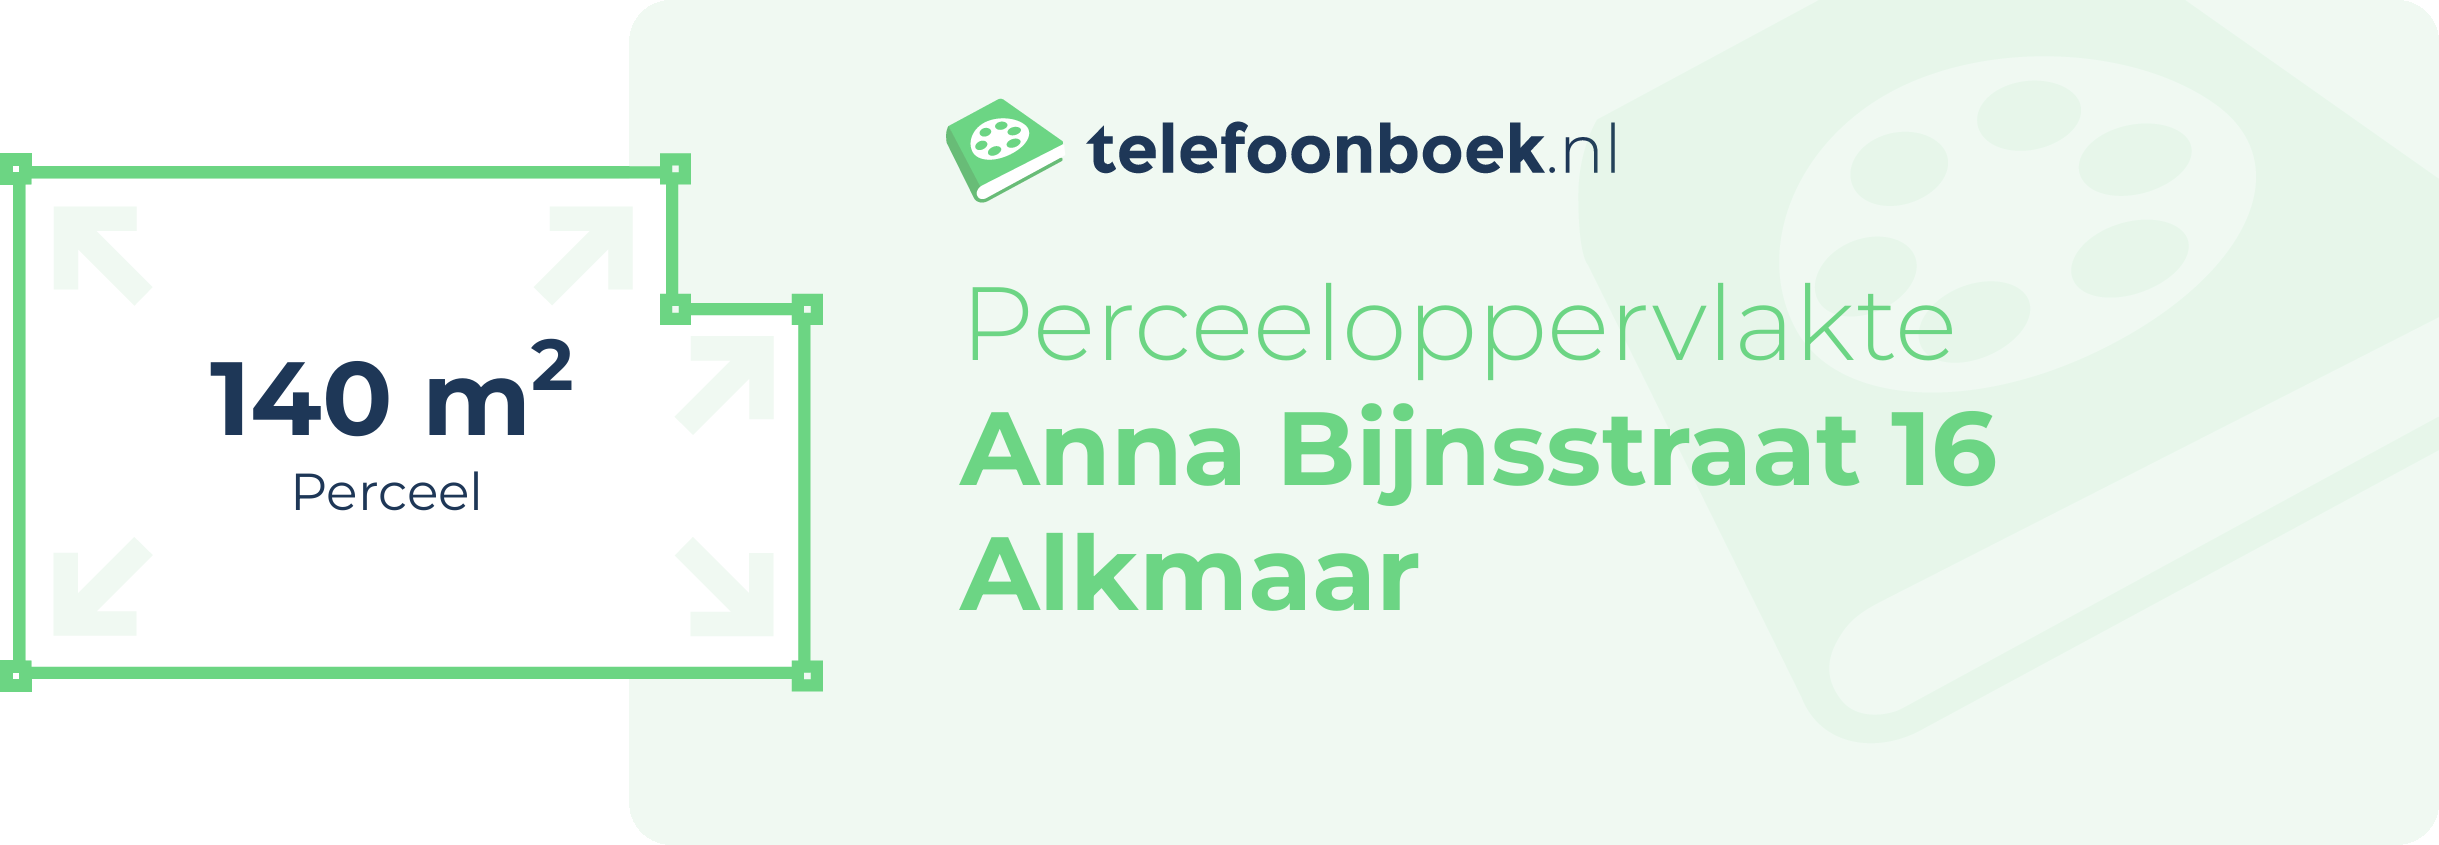 Perceeloppervlakte Anna Bijnsstraat 16 Alkmaar